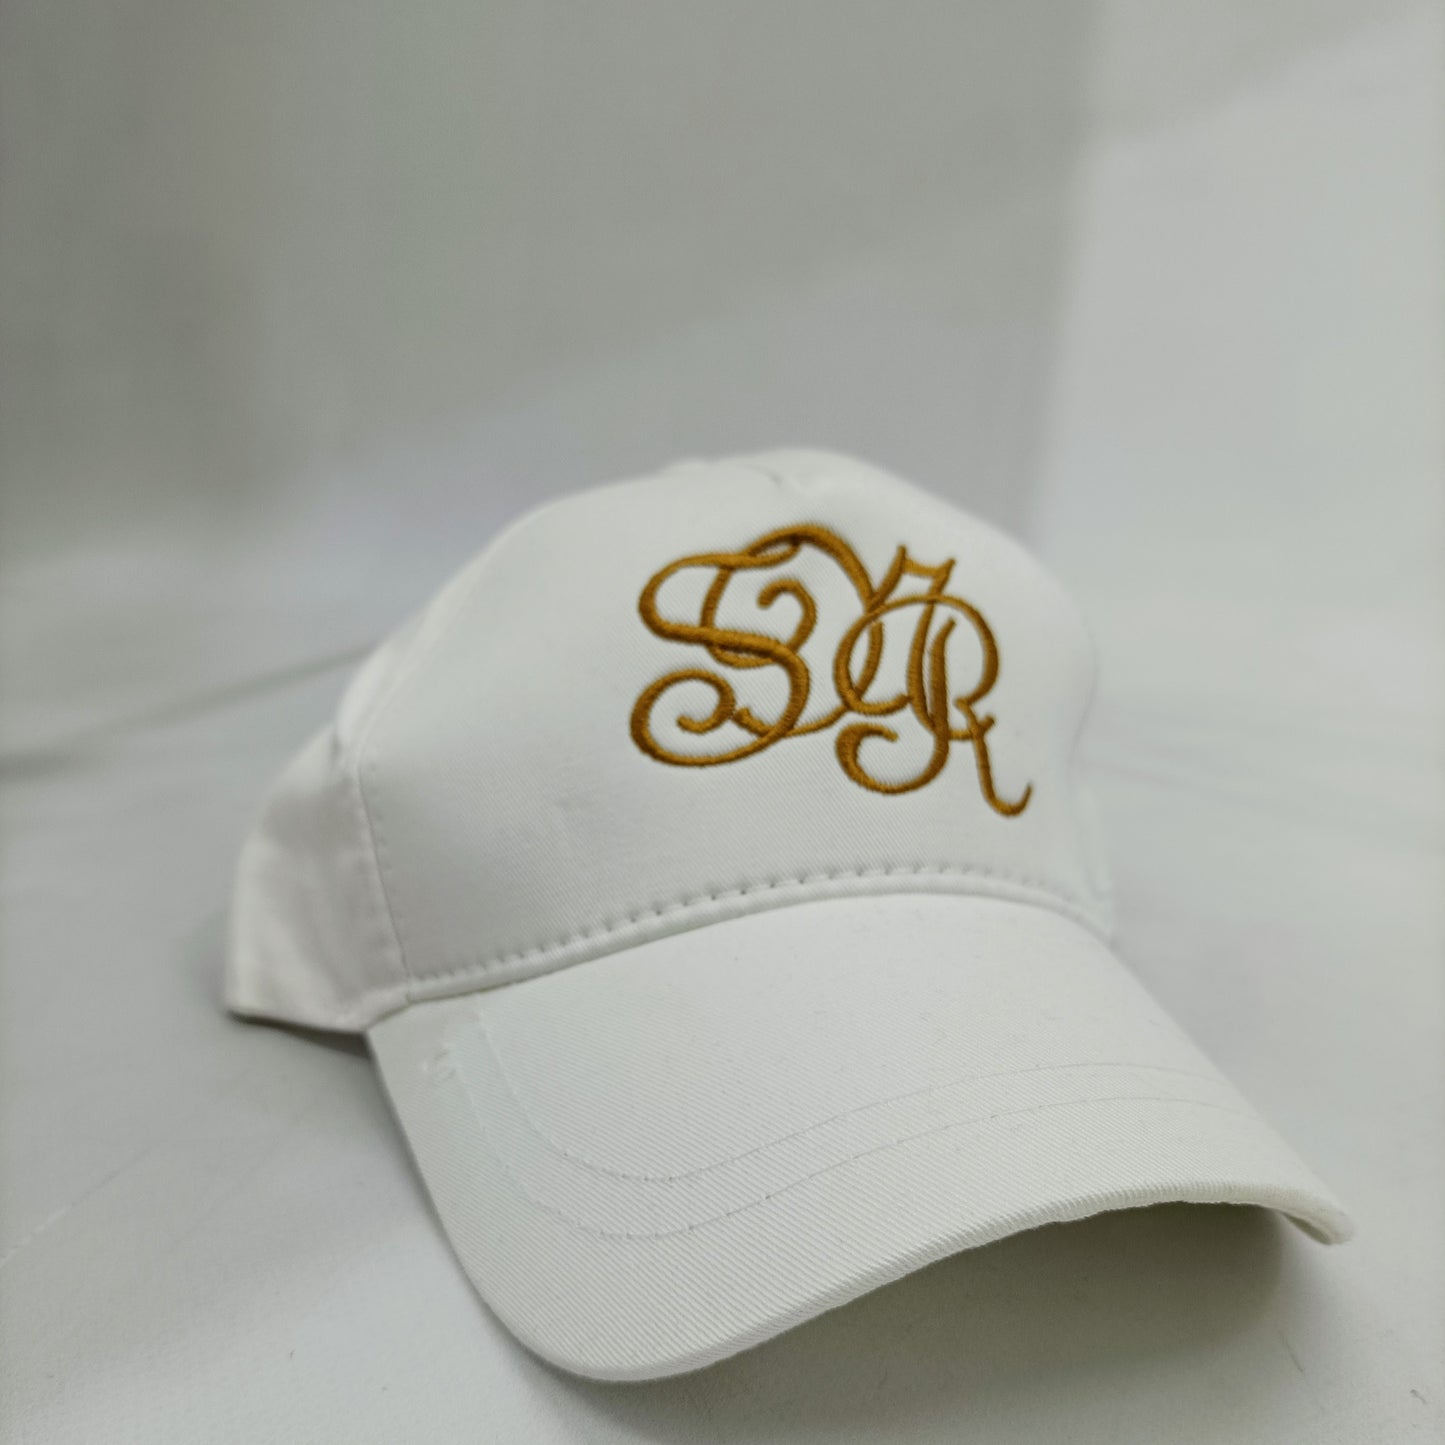 Καπέλο Jockey Senior Λευκό με Κεντημένο Μονόγραμμα σε Χρυσοκίτρινο Χρώμα - Ιδανικό για Υπαίθριες Δραστηριότητες | S01WX